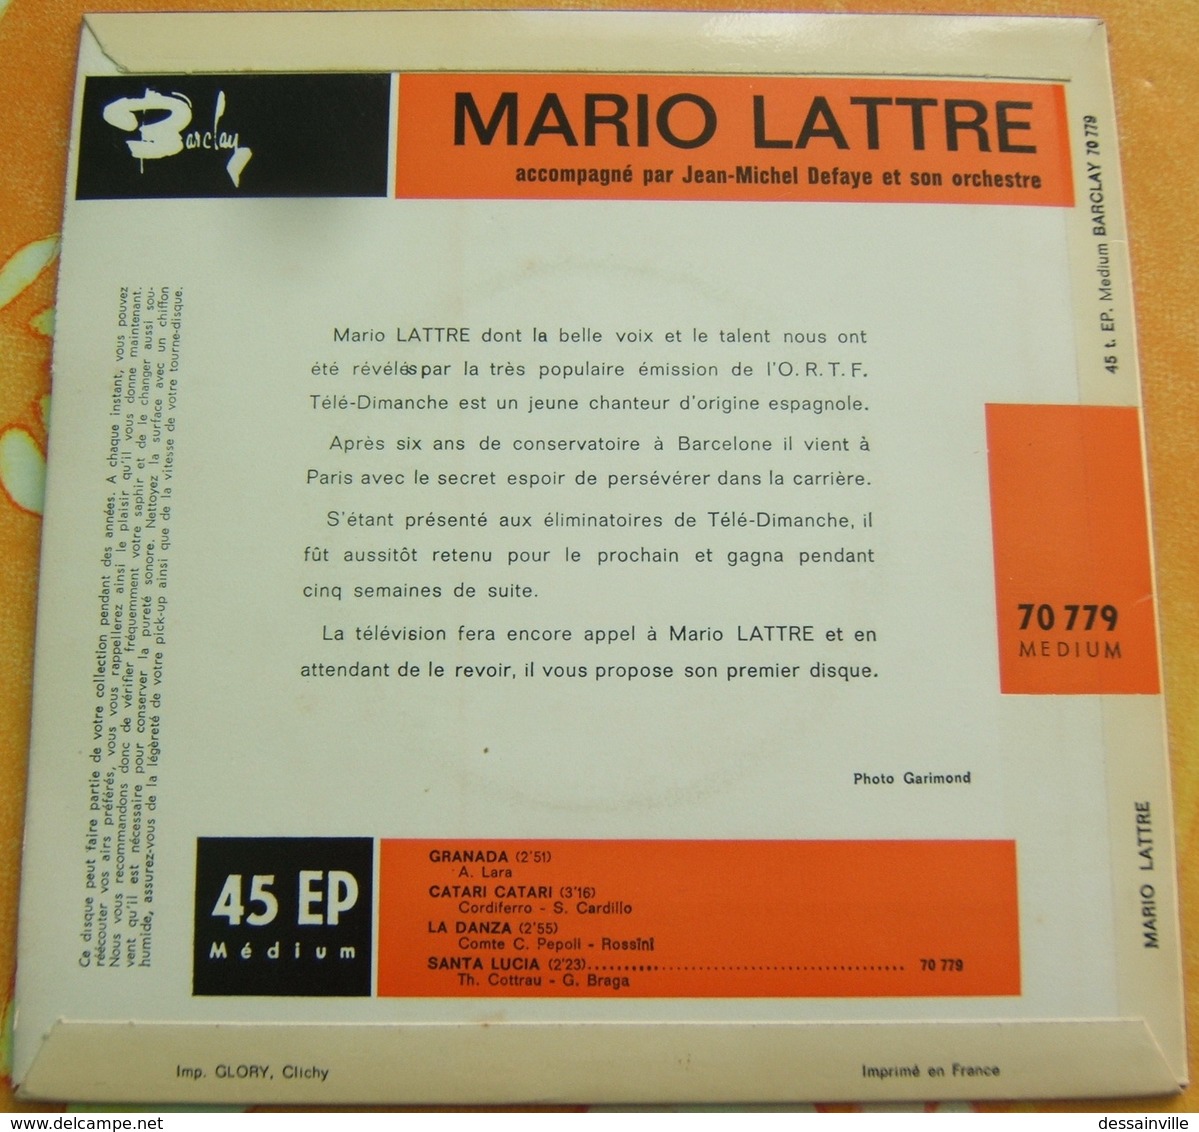 MARIO LATTRE 45 Tours - GRANADA / CATARI CATARI / LA DANZA / SANTA LUCIA - Révélation TELE-DIMANCHE - Other - Spanish Music